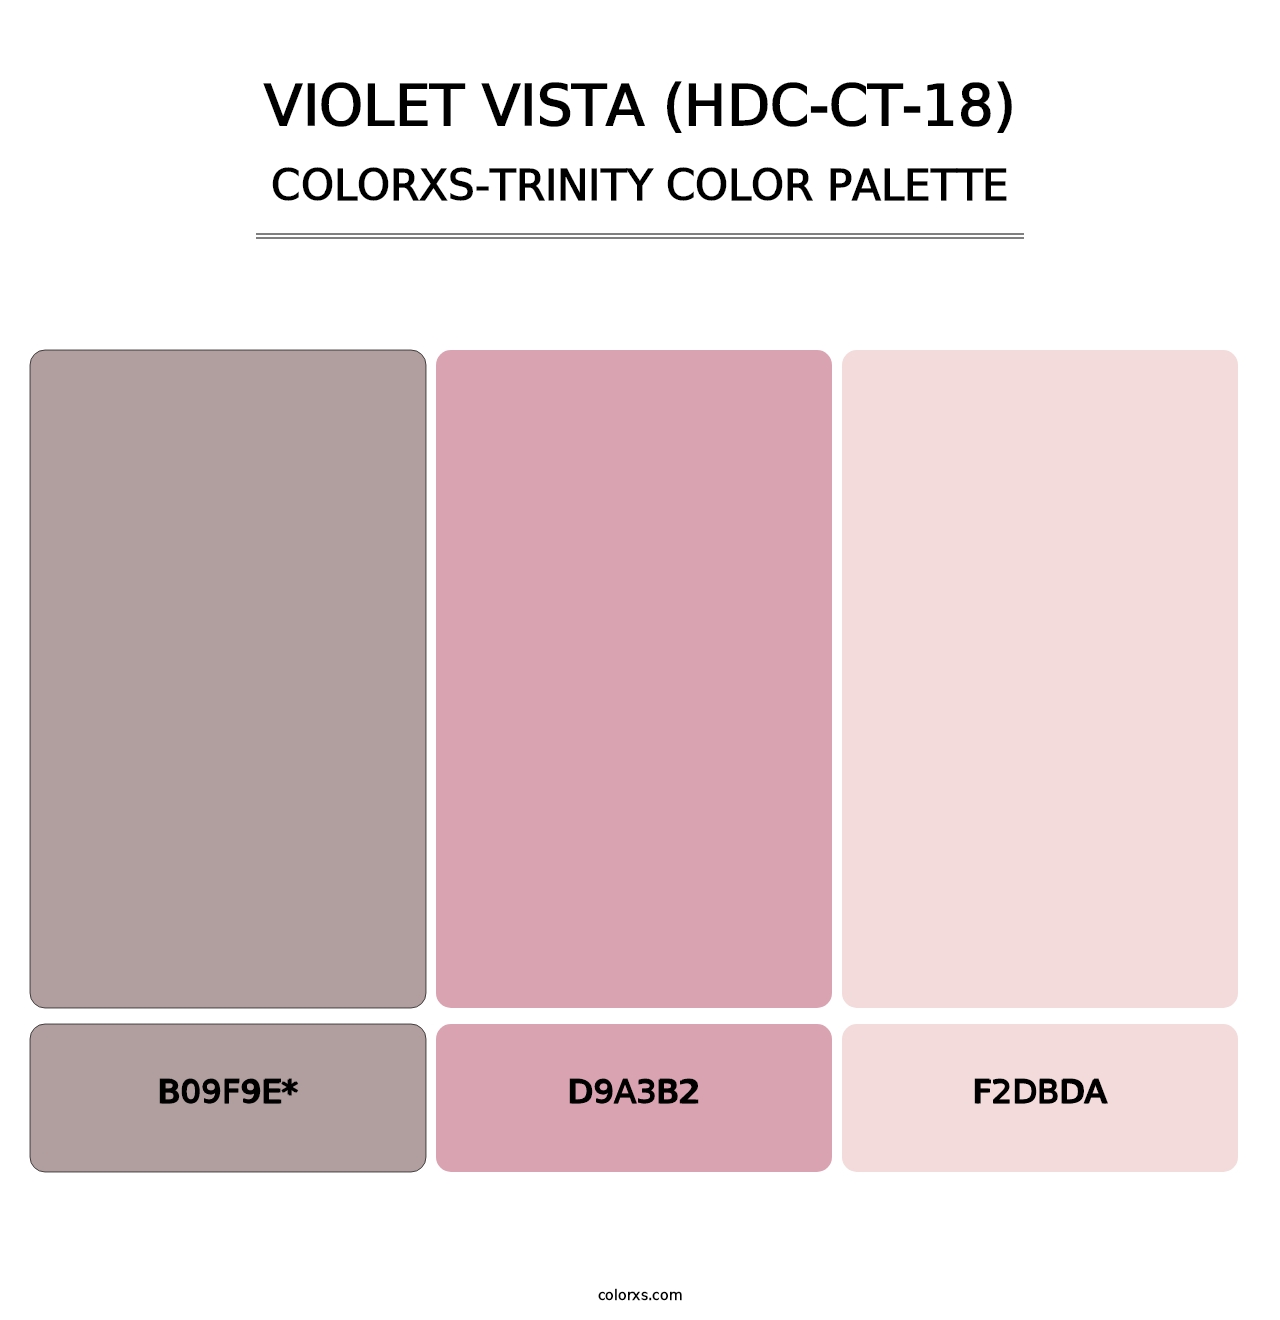 Violet Vista (HDC-CT-18) - Colorxs Trinity Palette